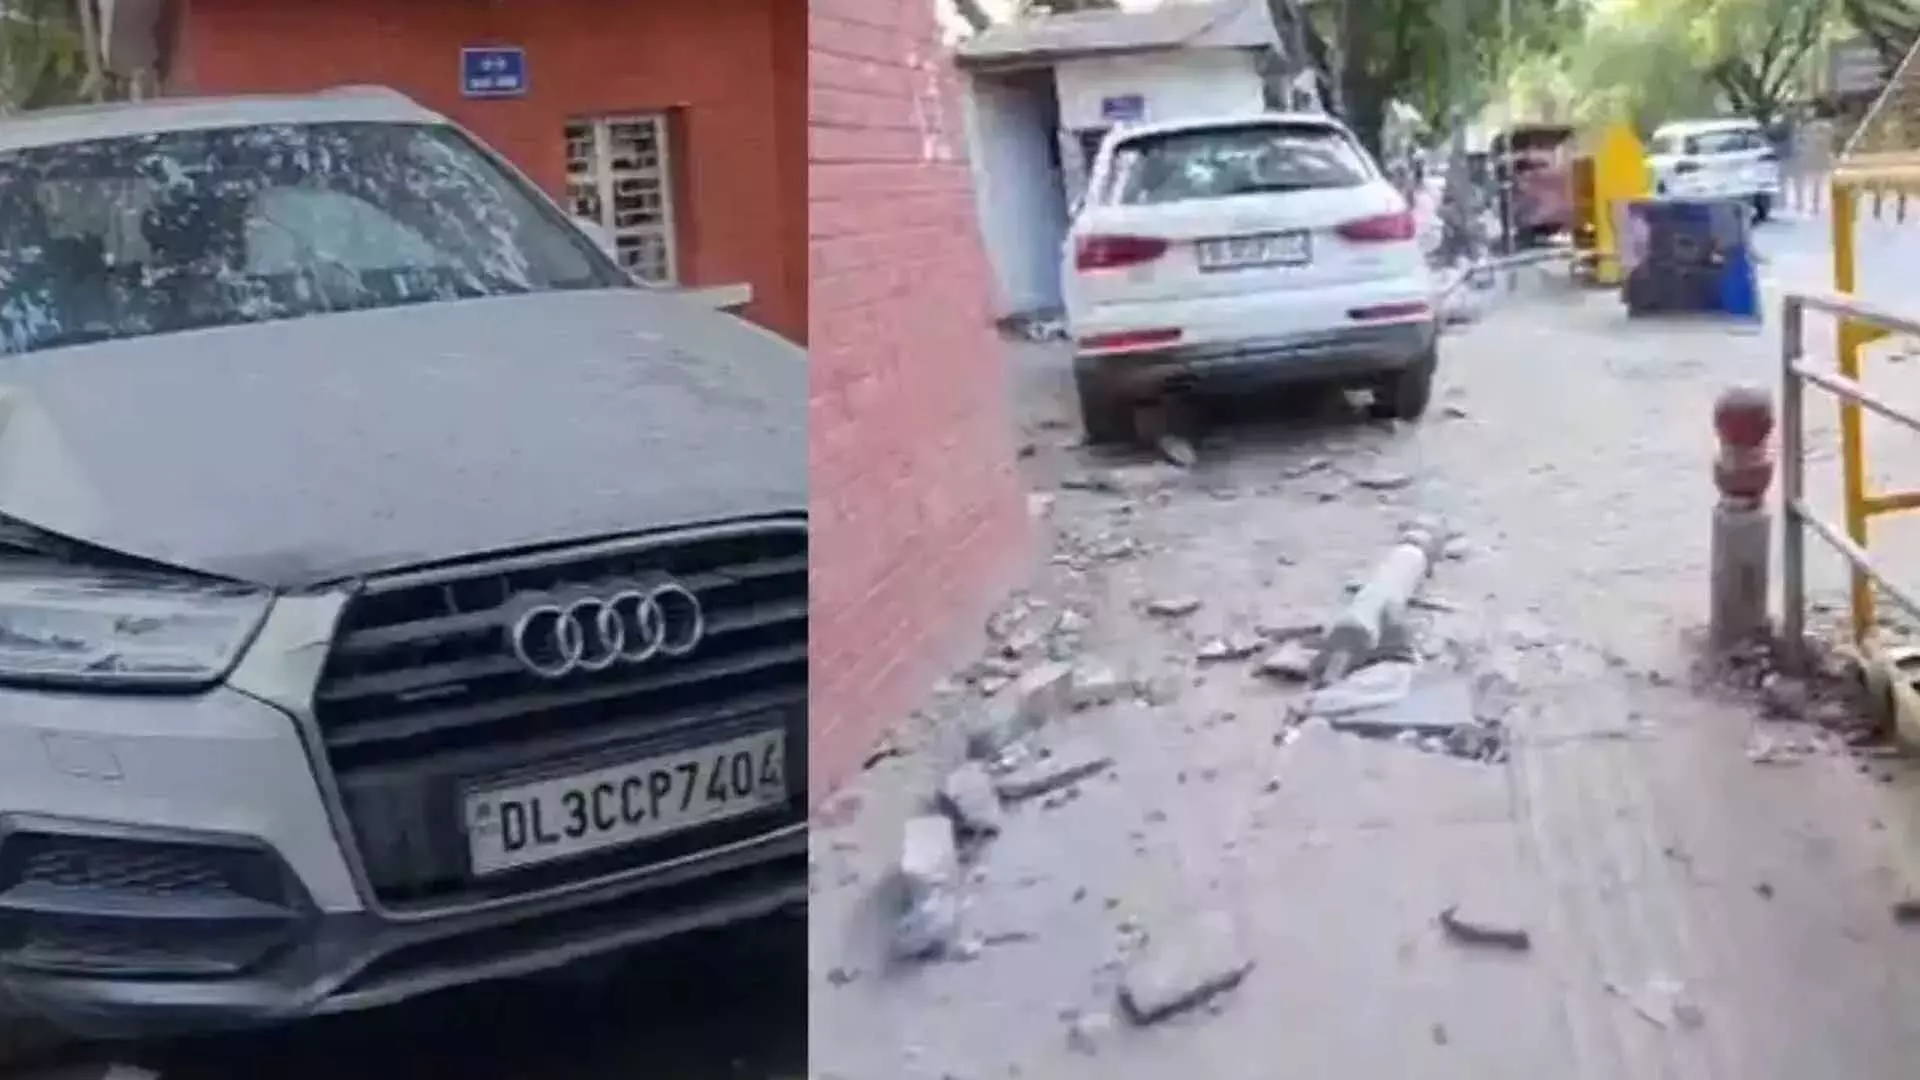 Delhi: कॉलेज के पास तेज रफ्तार Audi के नियंत्रण खोने से एक की मौत, दूसरा घायल